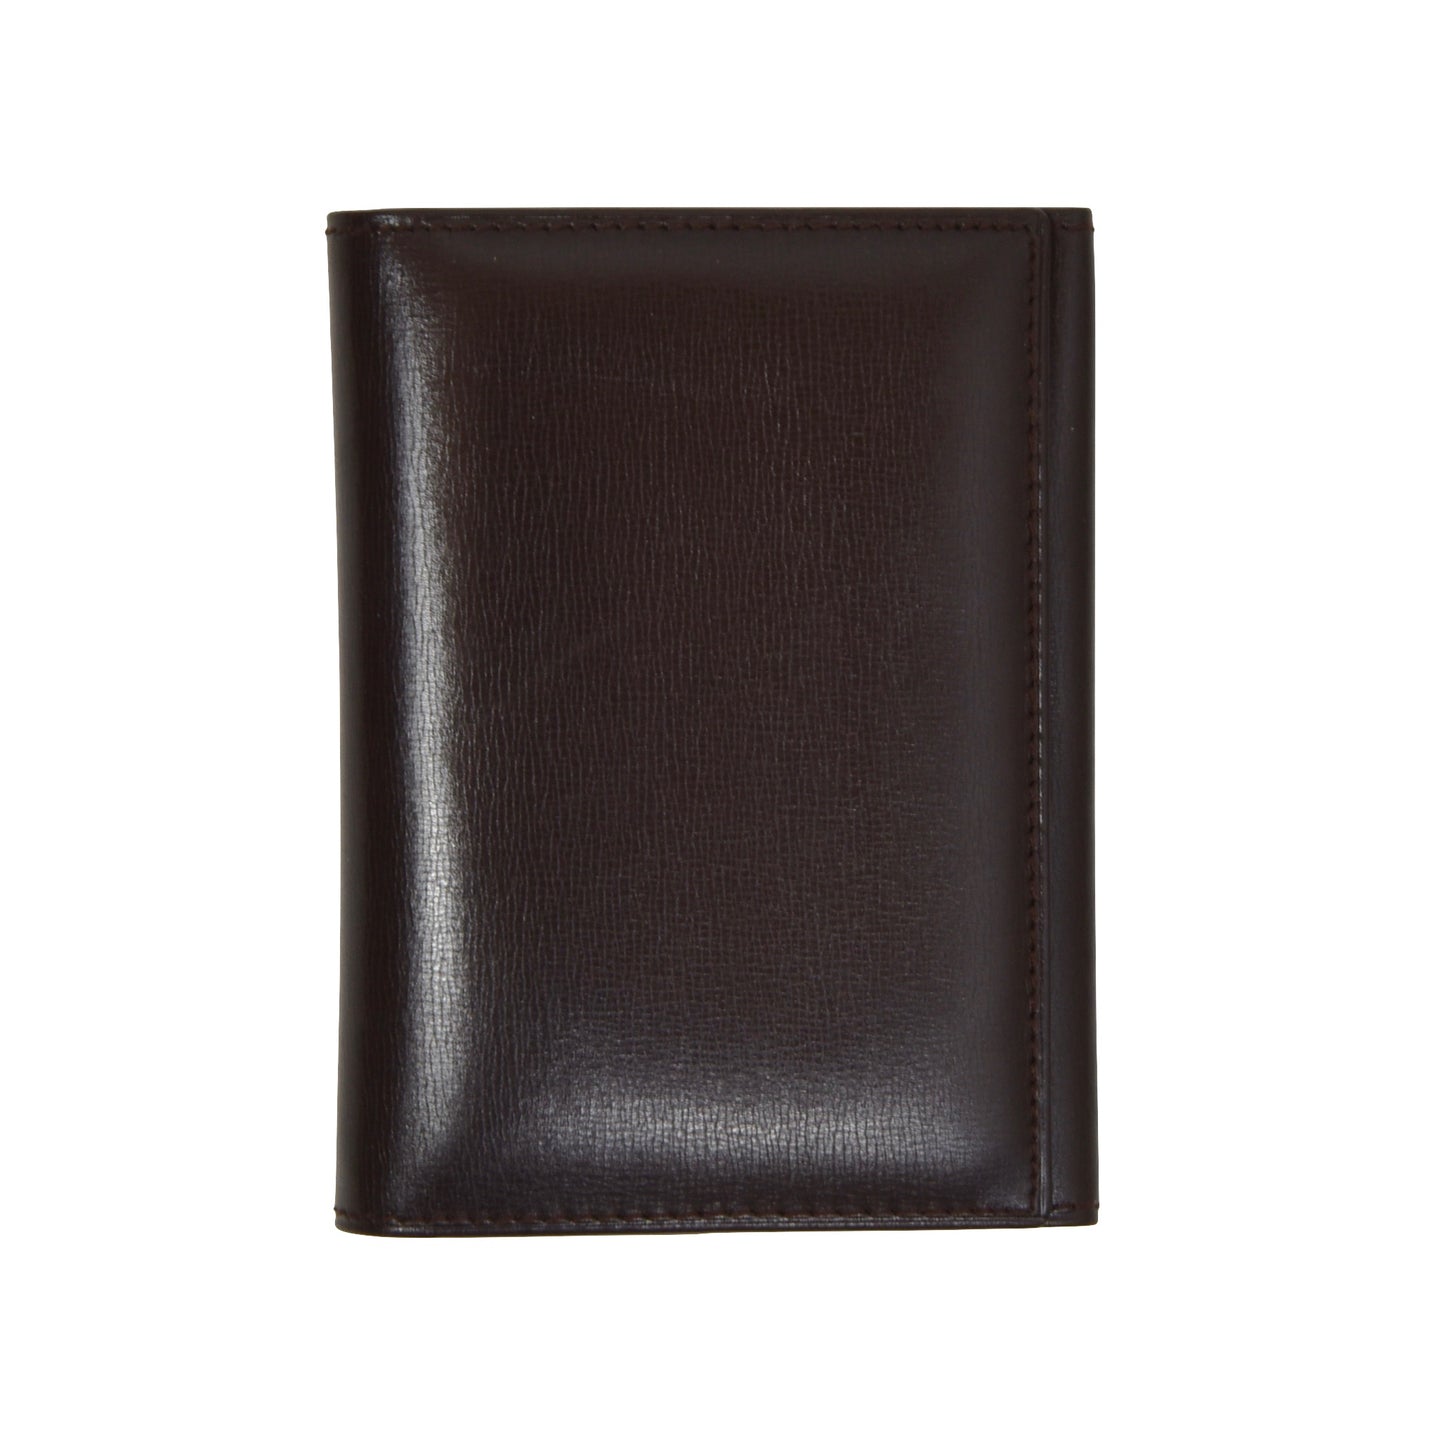 Hans Knoll Wien Leather Wallet - Brown